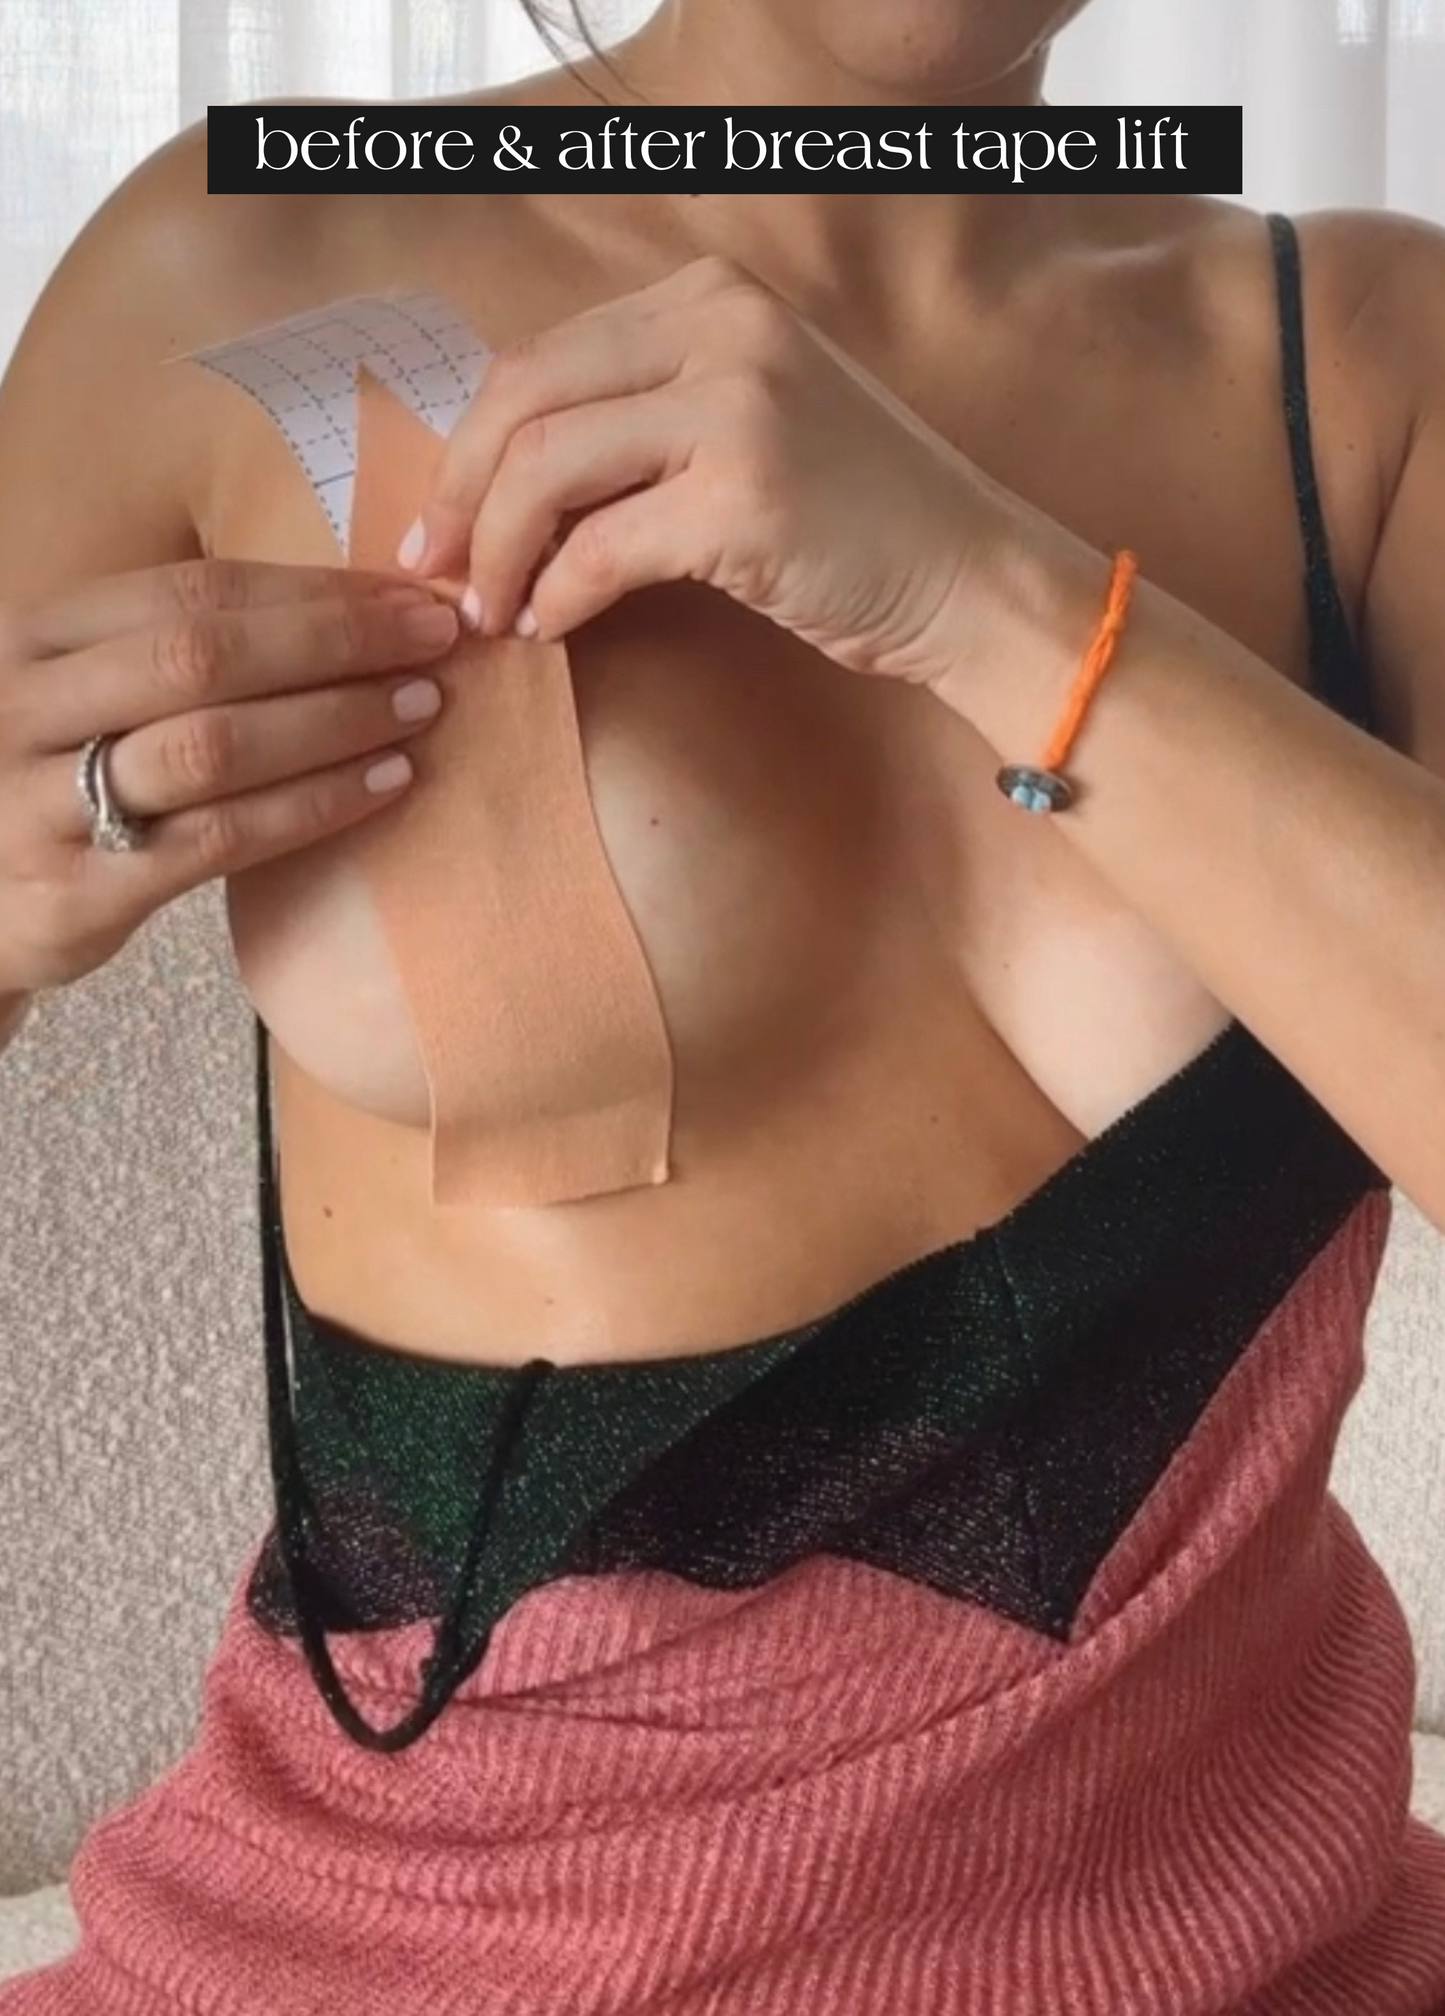 Breast Tape + Jojoba Body Oil Bundle